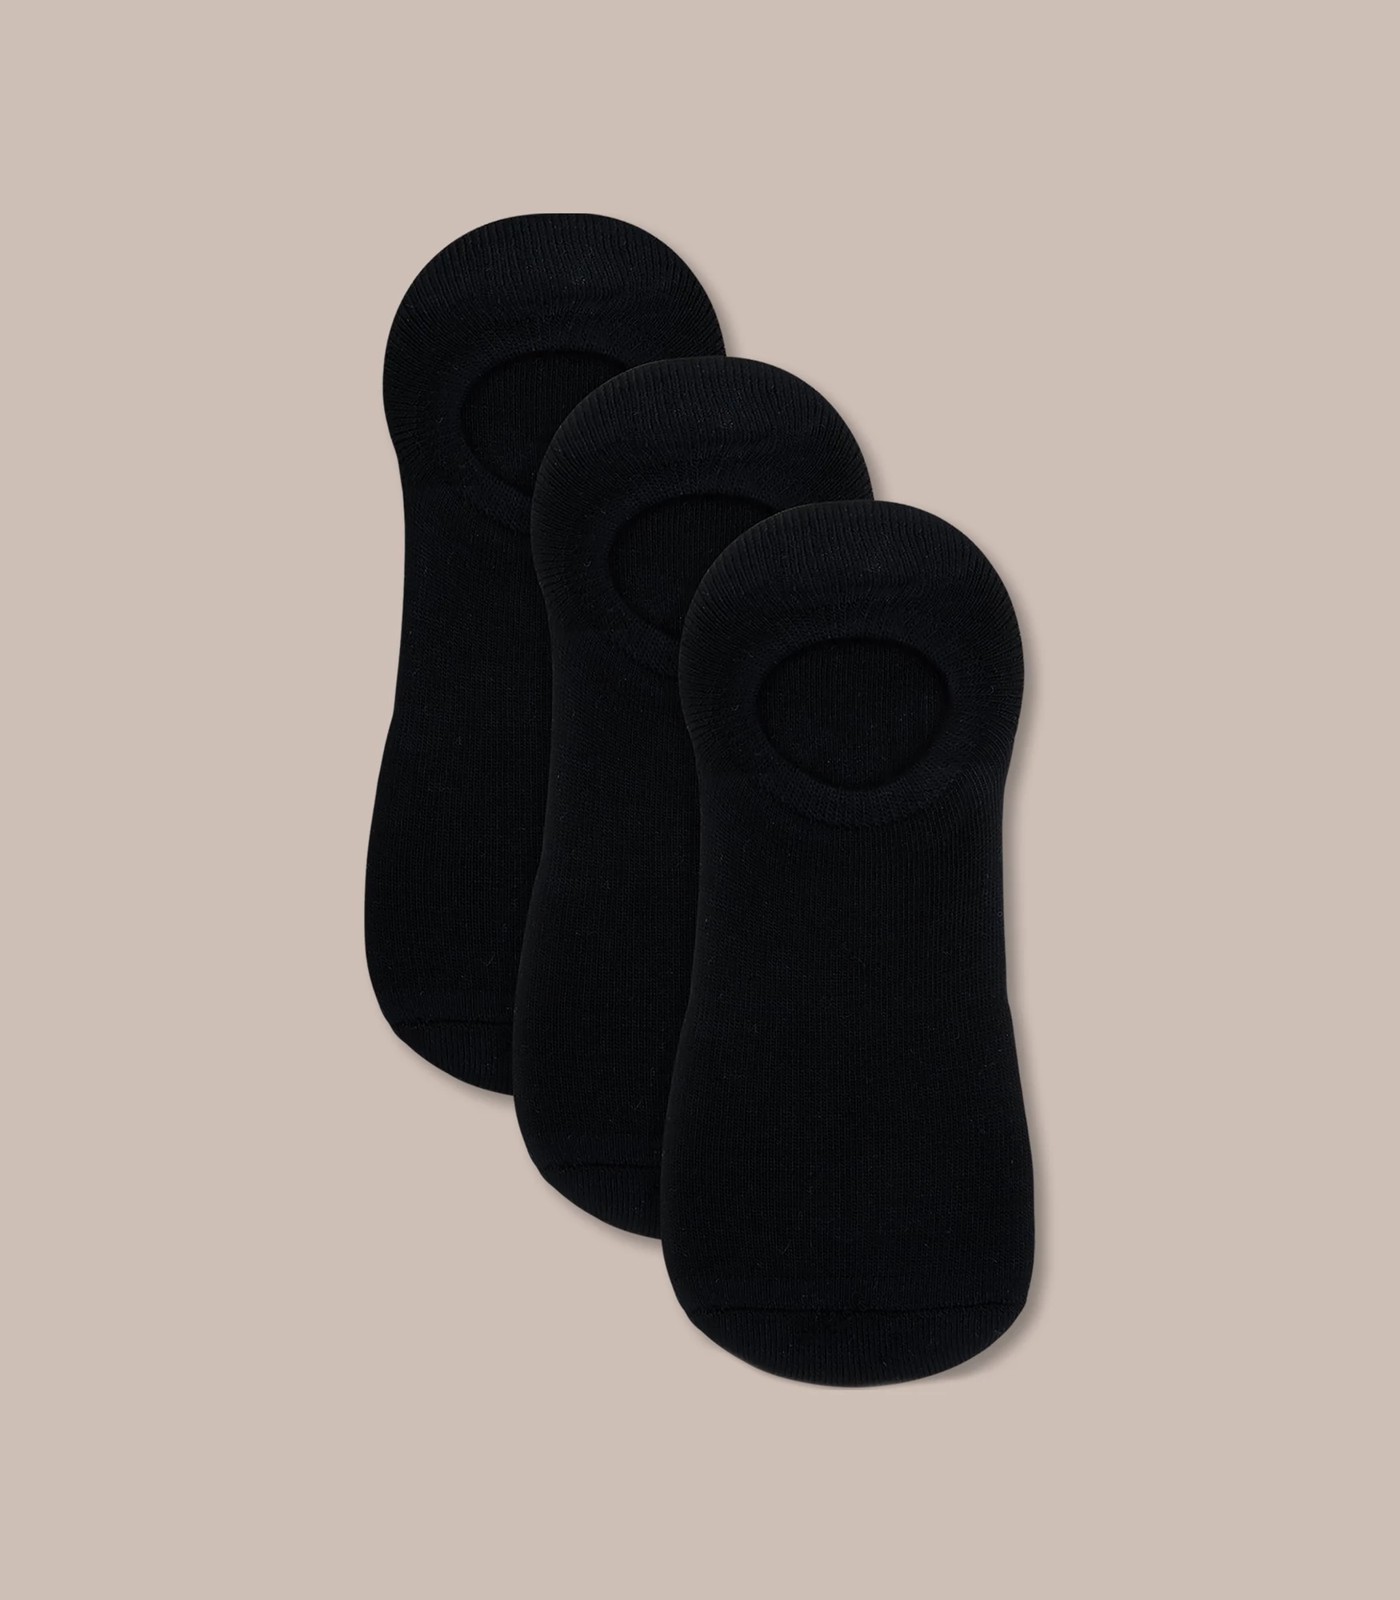 Underworks Ladies Heel Grip Socks Black 5/8 2 Pack